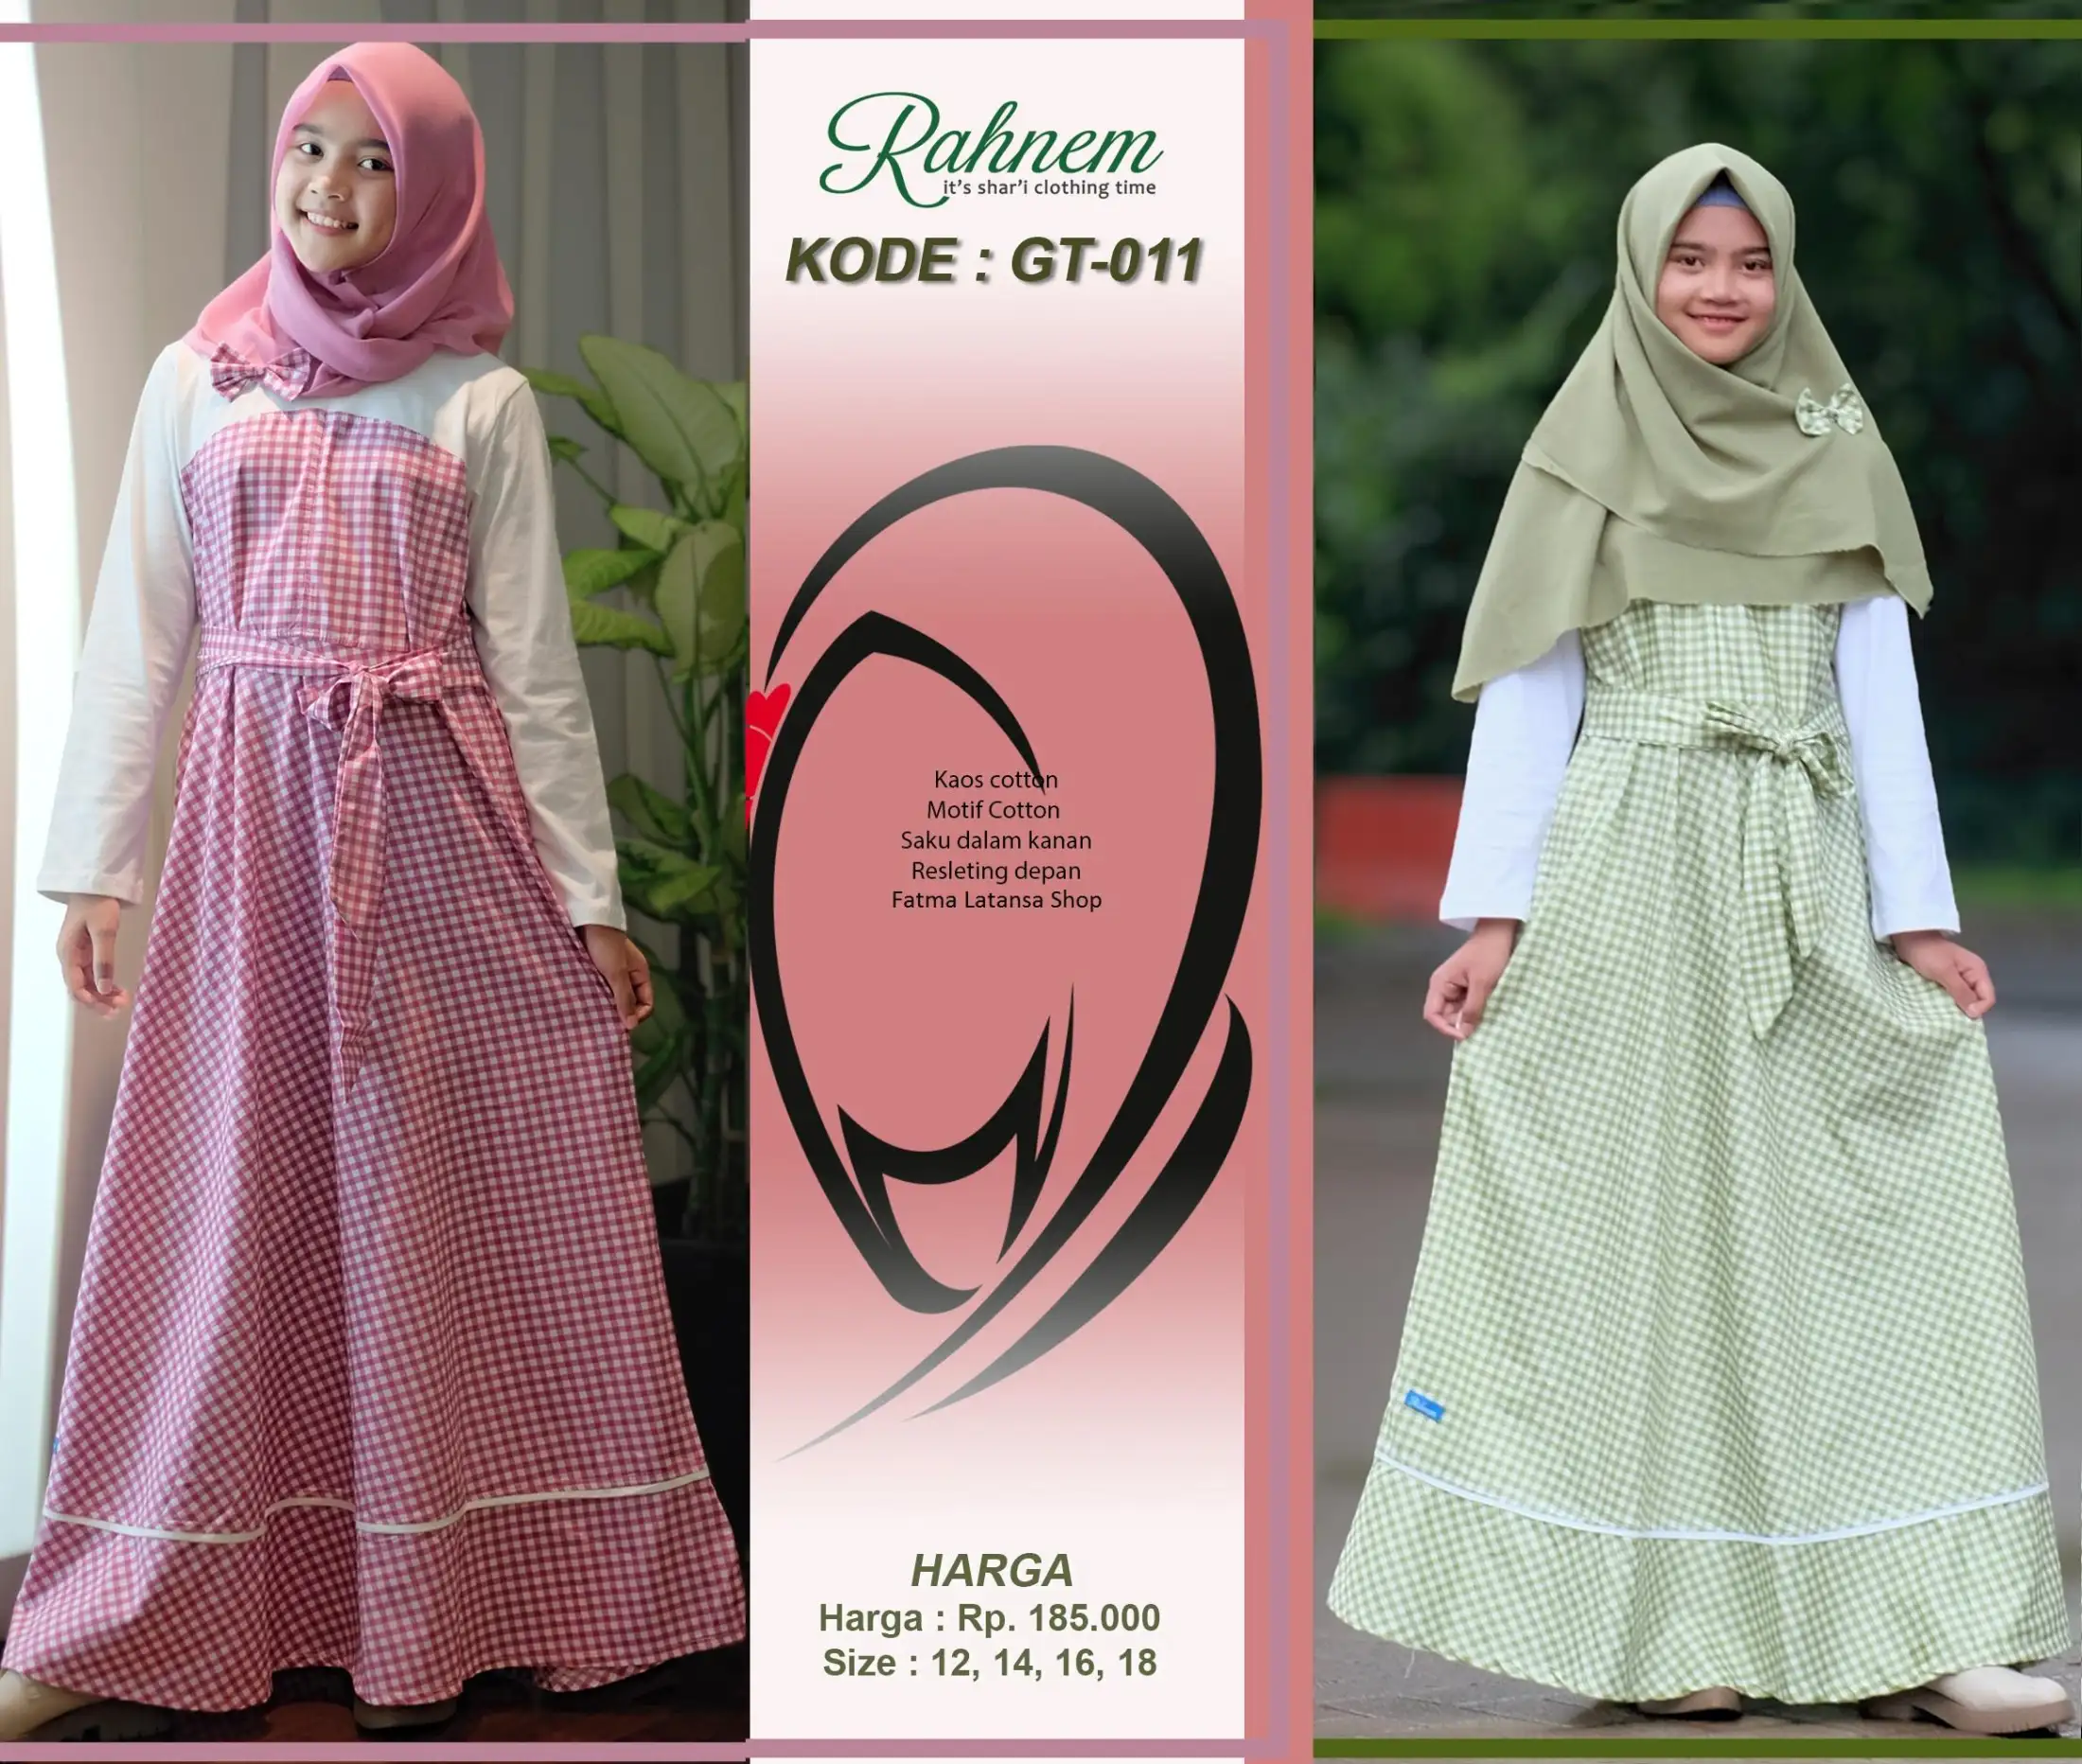 Gamis Remaja Rahnem Gt 11 Pakaian Anak Tanggung Baju Muslim Lazada Indonesia